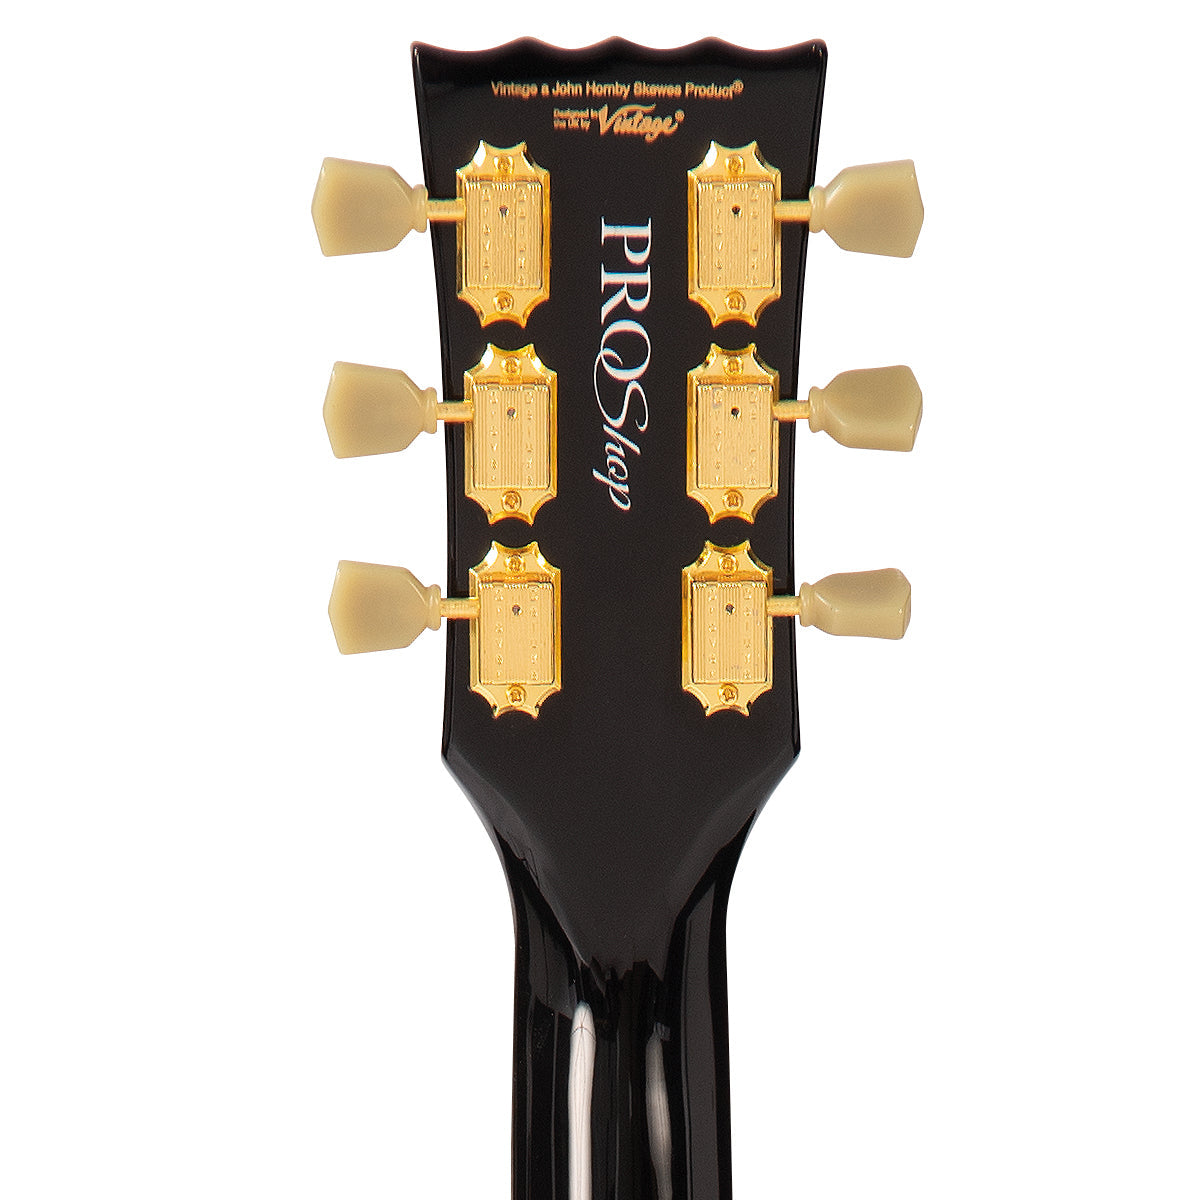 SOLD - Vintage V100 ProShop Unique ~ The Brick, Electric Guitars for sale at Richards Guitars.